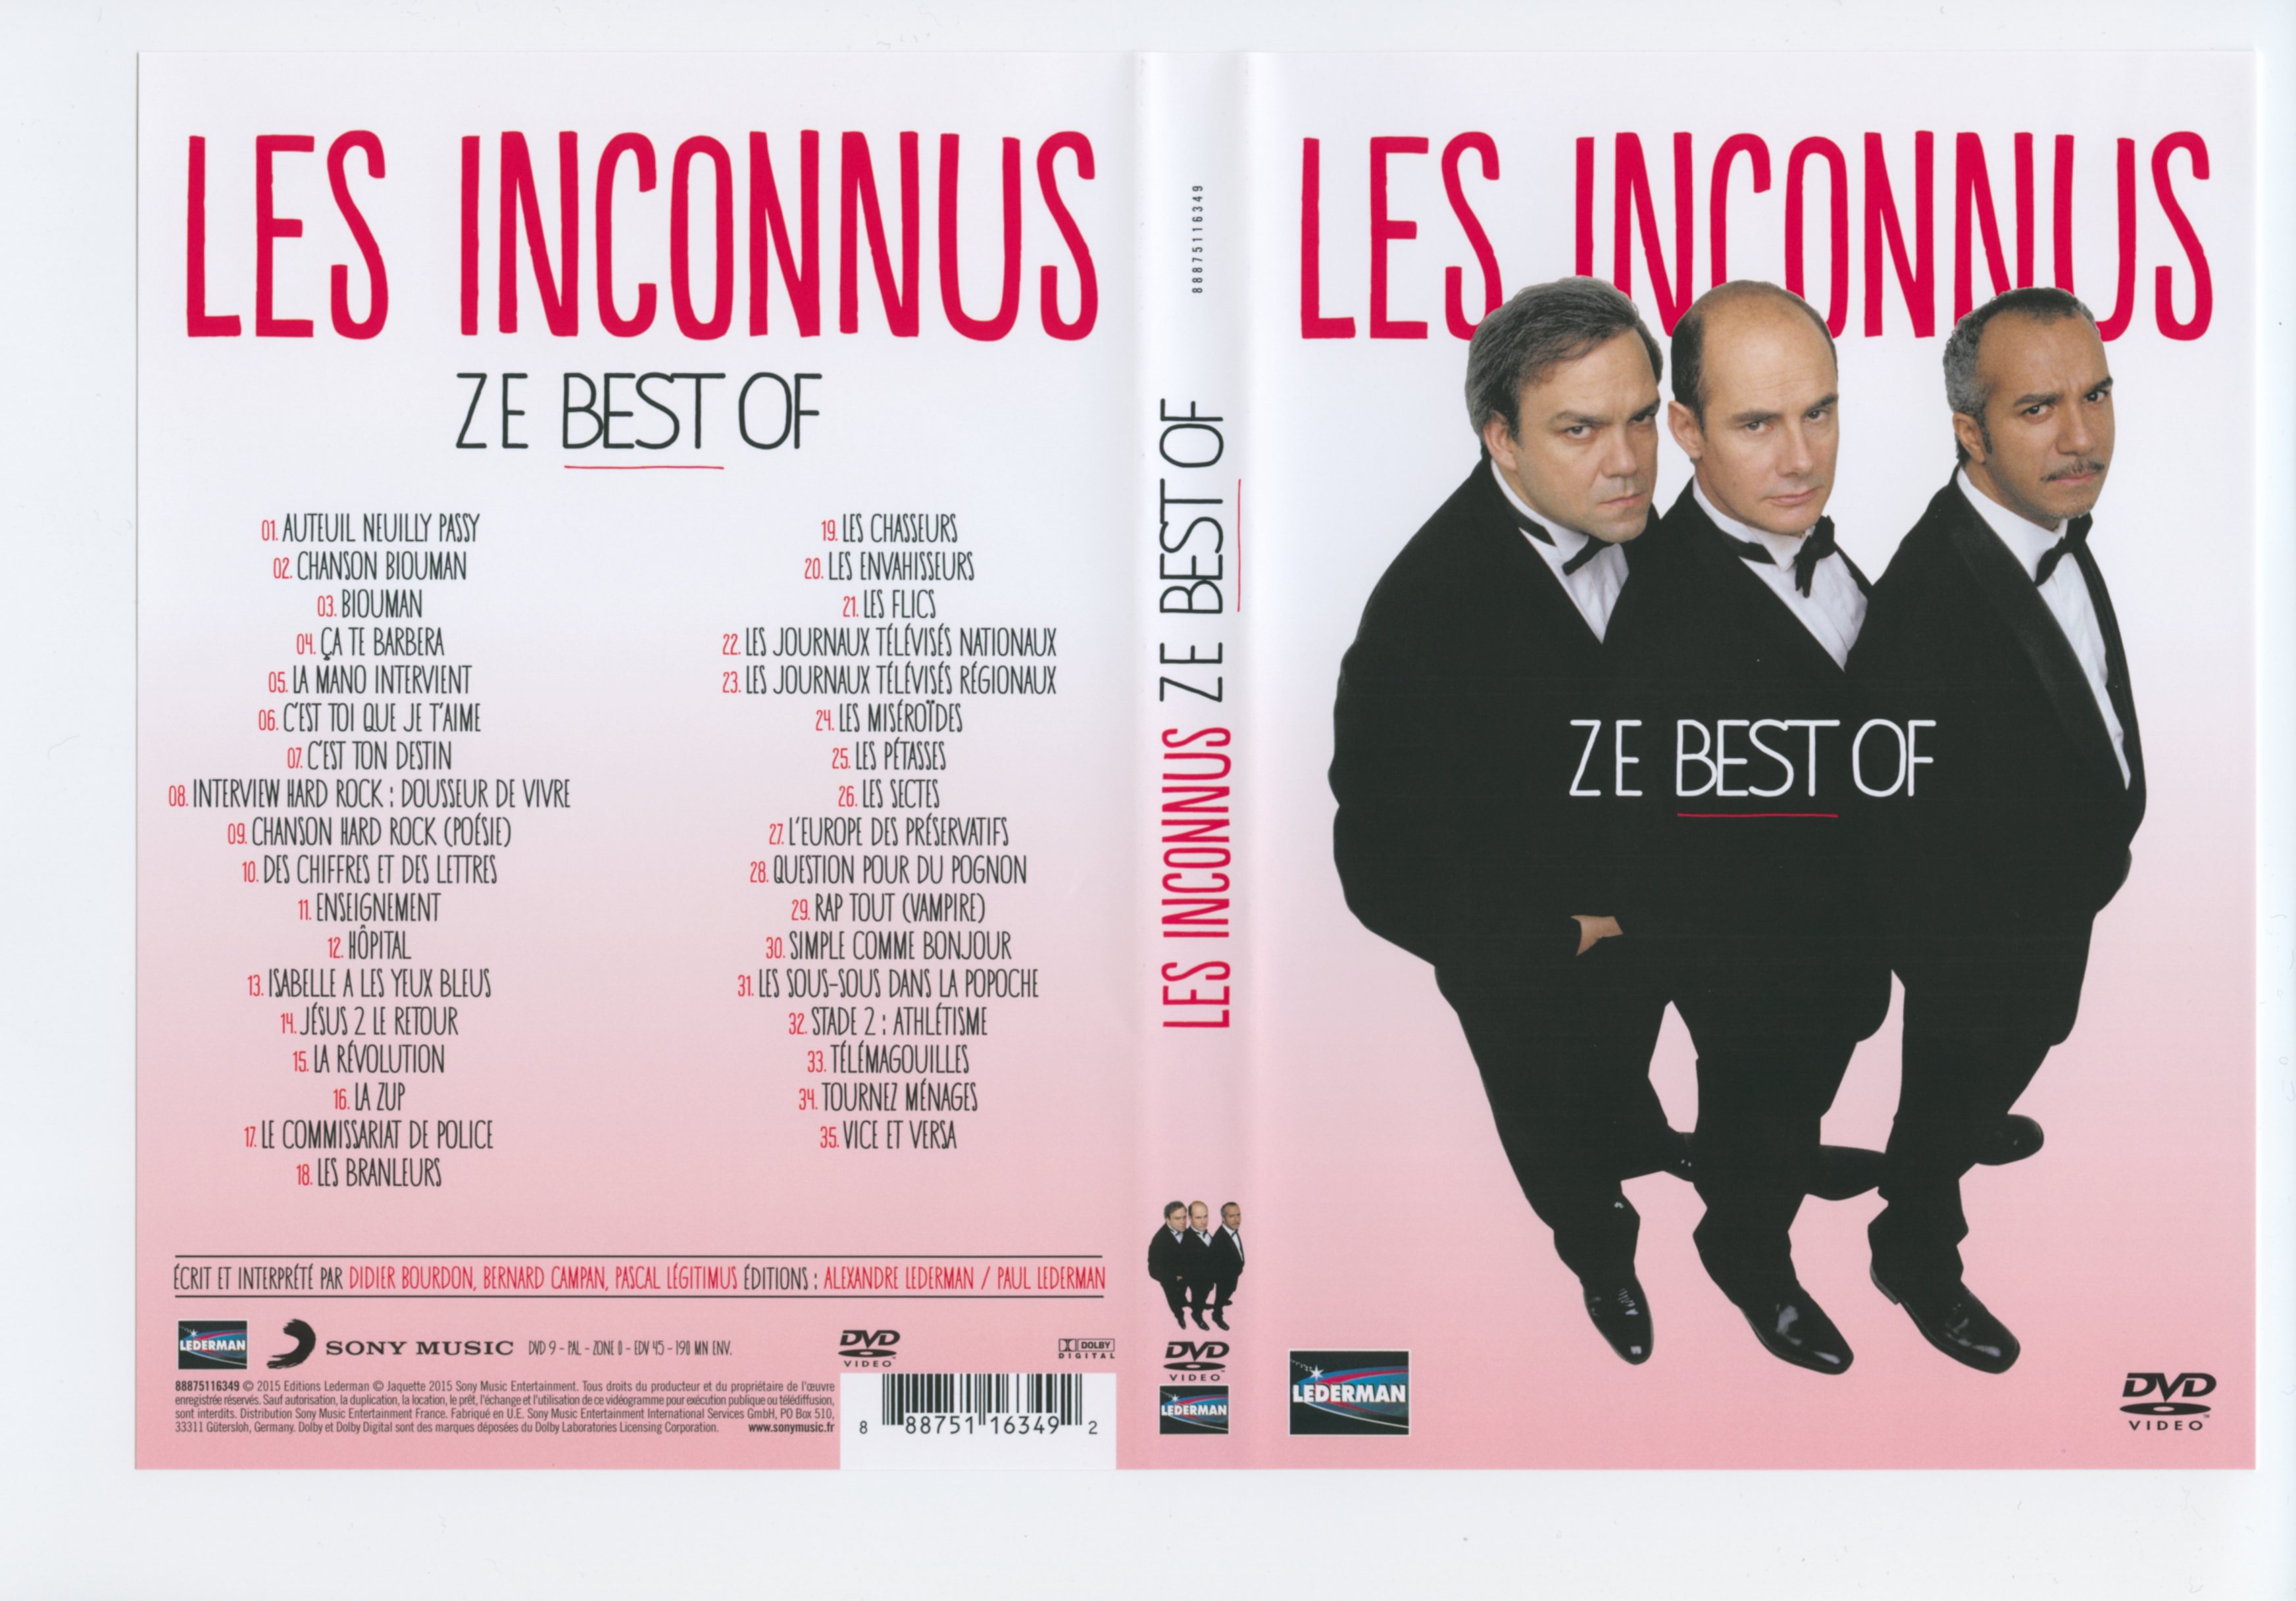 Jaquette DVD Les inconnus Ze best of